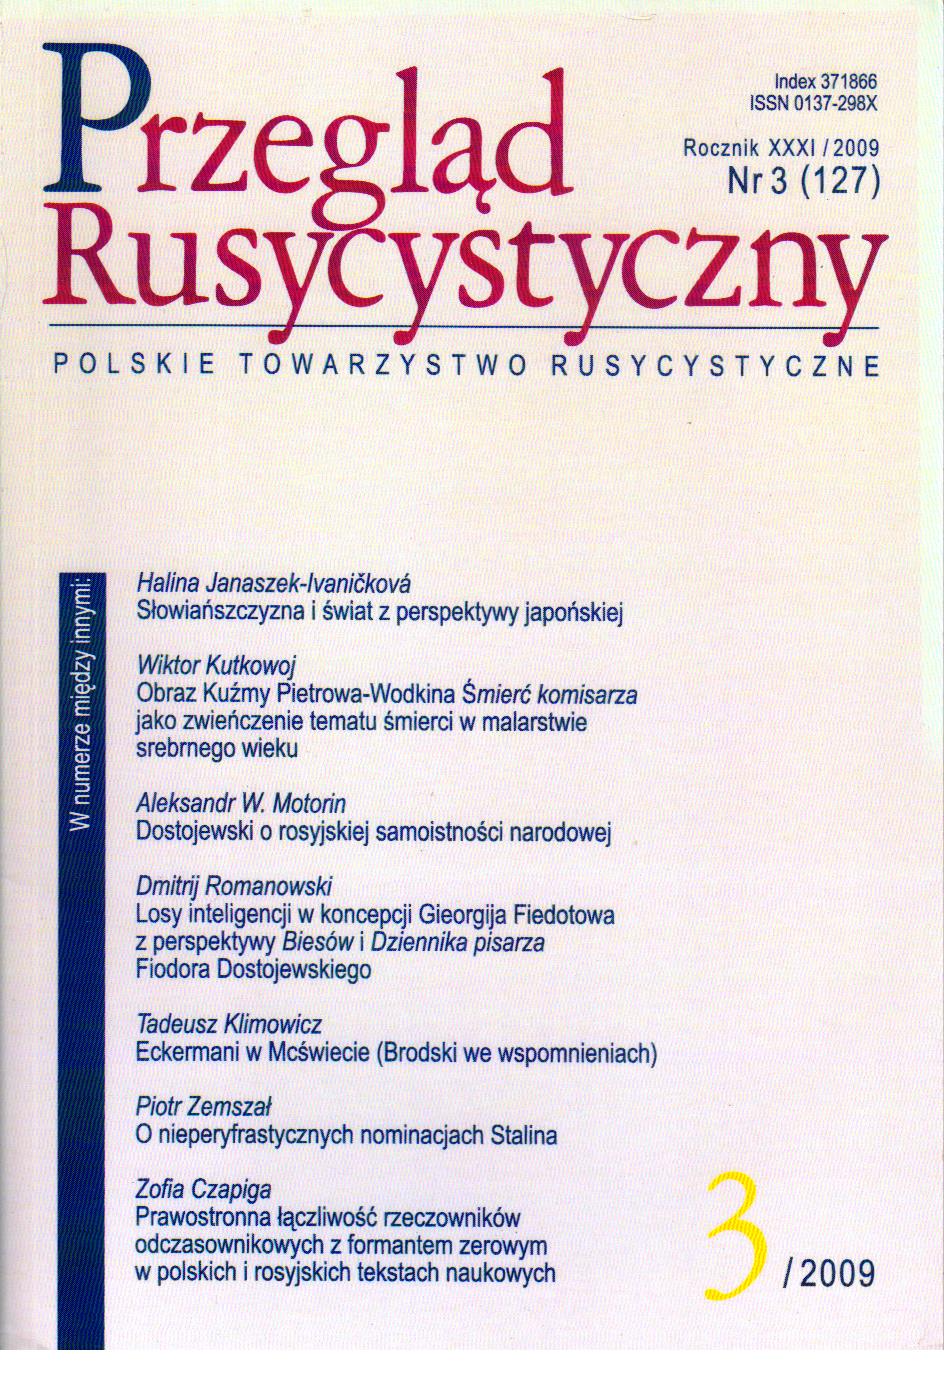 Prawostronna łączliwość rzeczowników odczasownikowych z formantem zerowym w polskich i rosyjskich tekstach naukowych